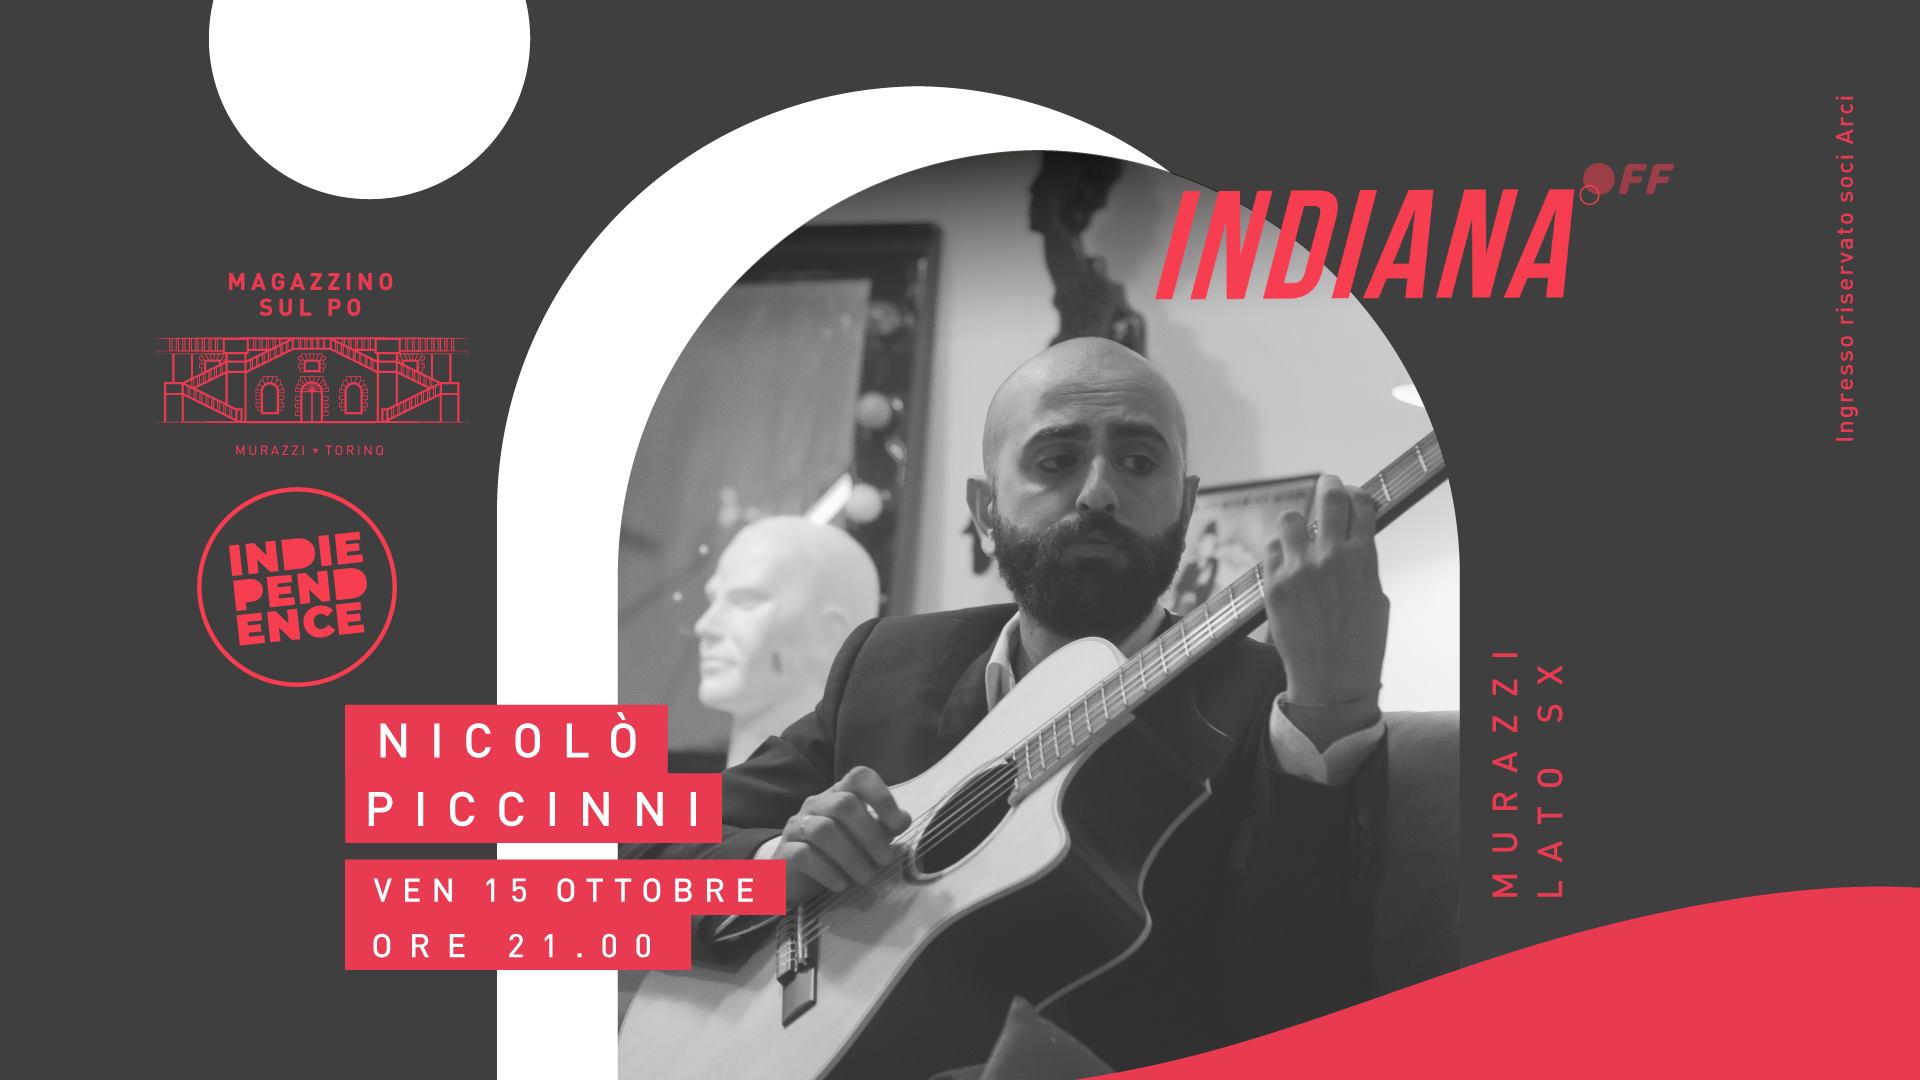 NICOLÒ PICCINNI & GLI INTERNAUTI - "Autrement" release show | Indiana OFF #3